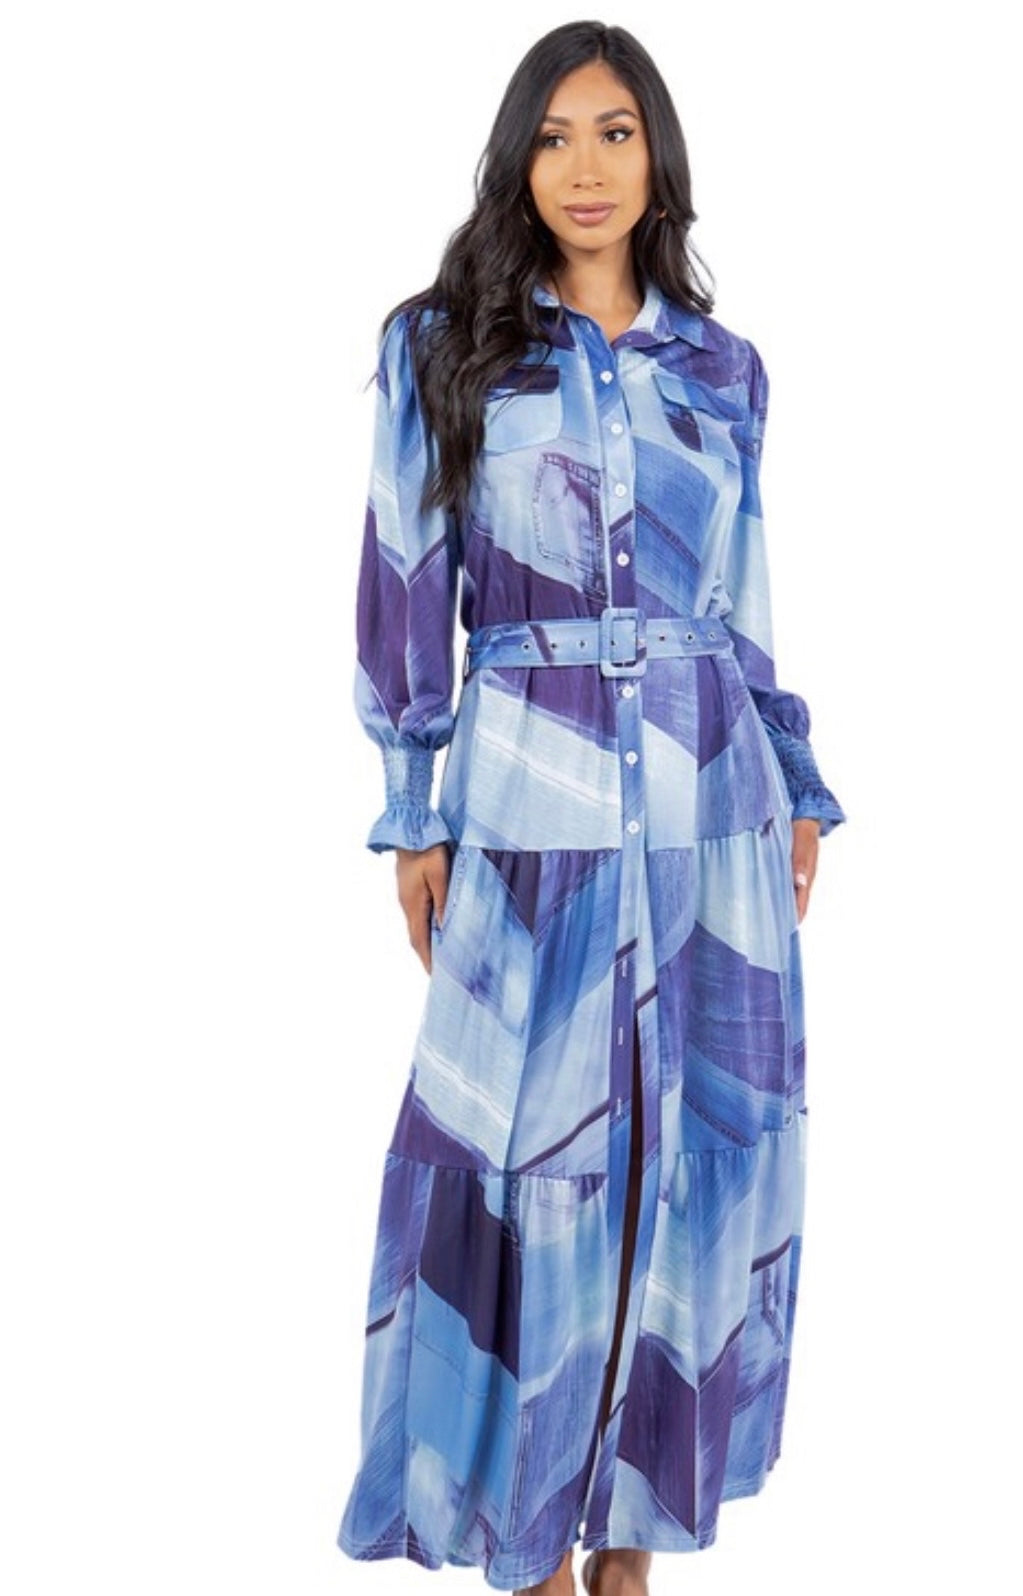 The Blues Multi-Print Dress